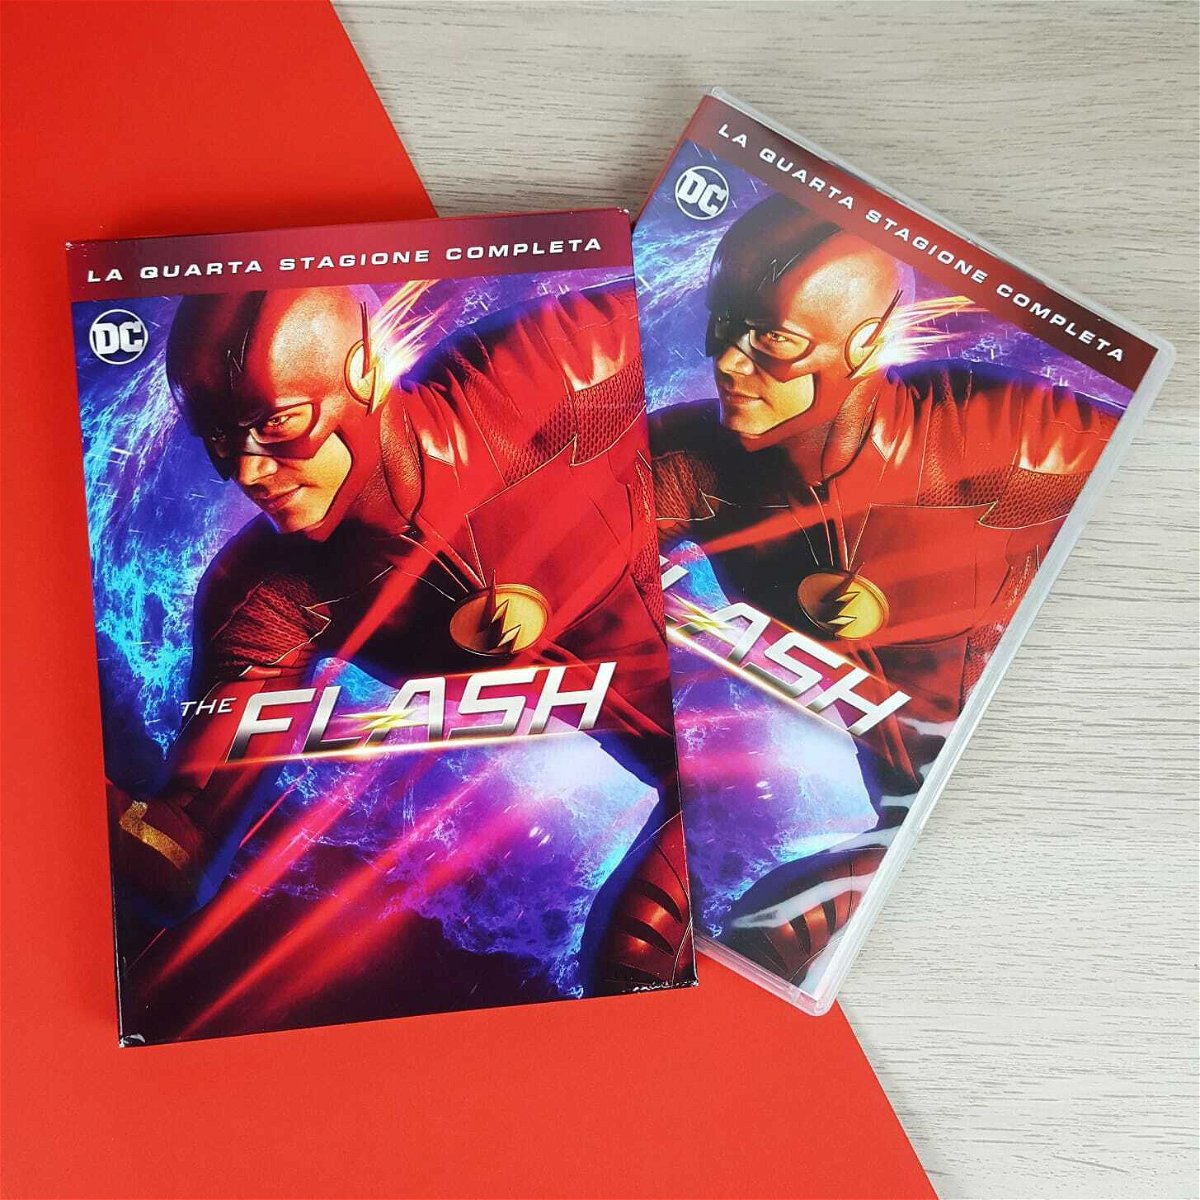 La quarta stagione di The Flash in DVD